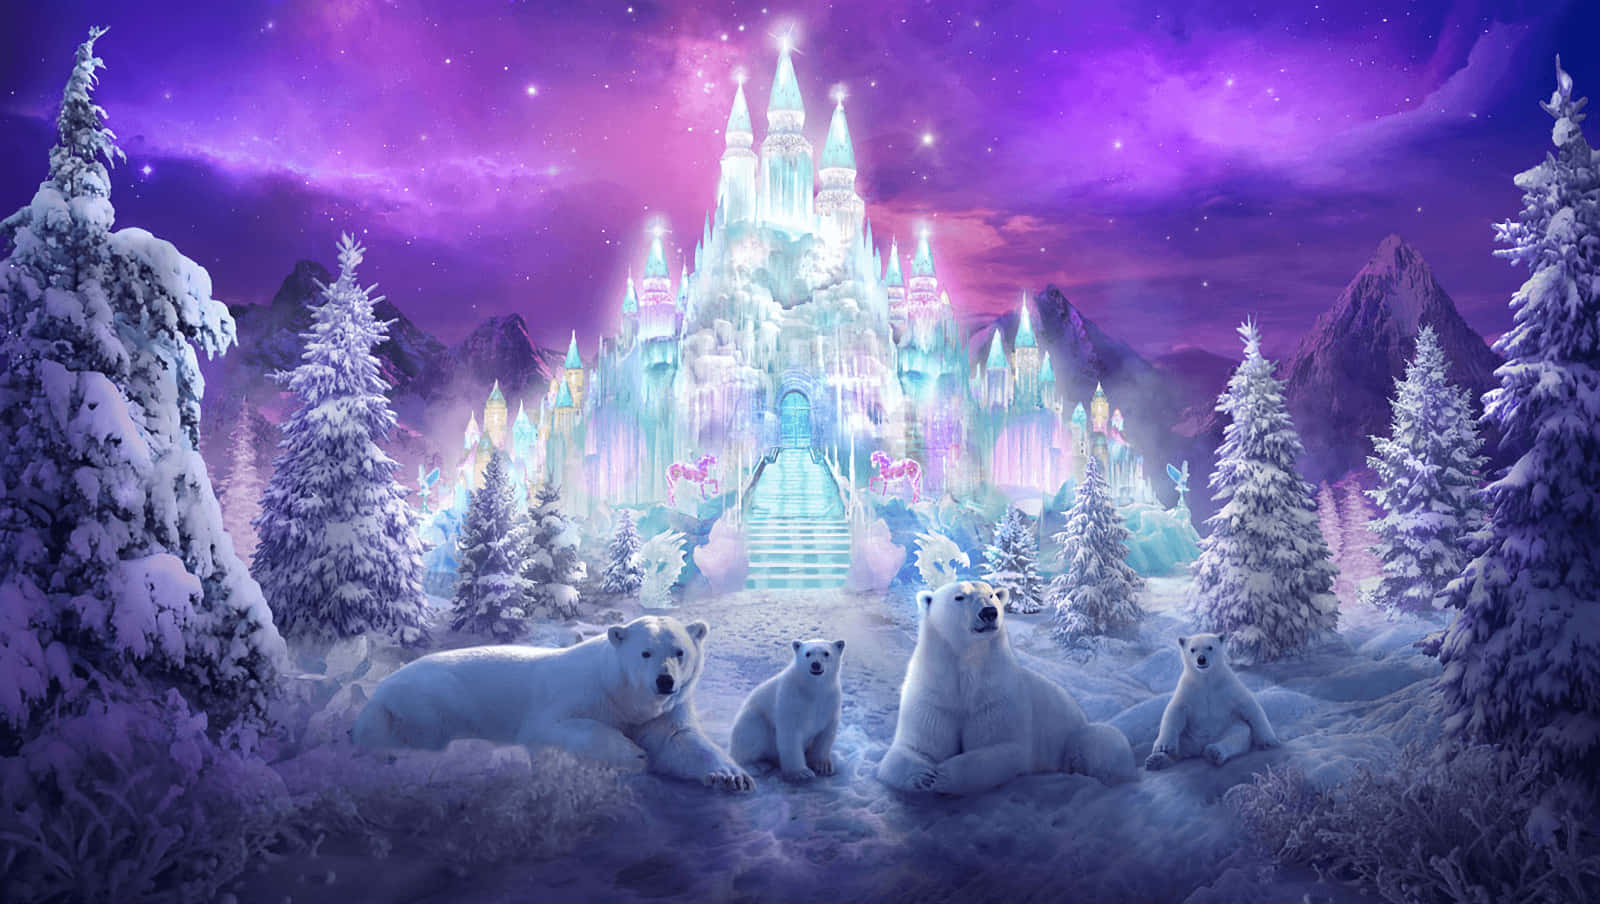 Ice Castle Winter Wonderland Background